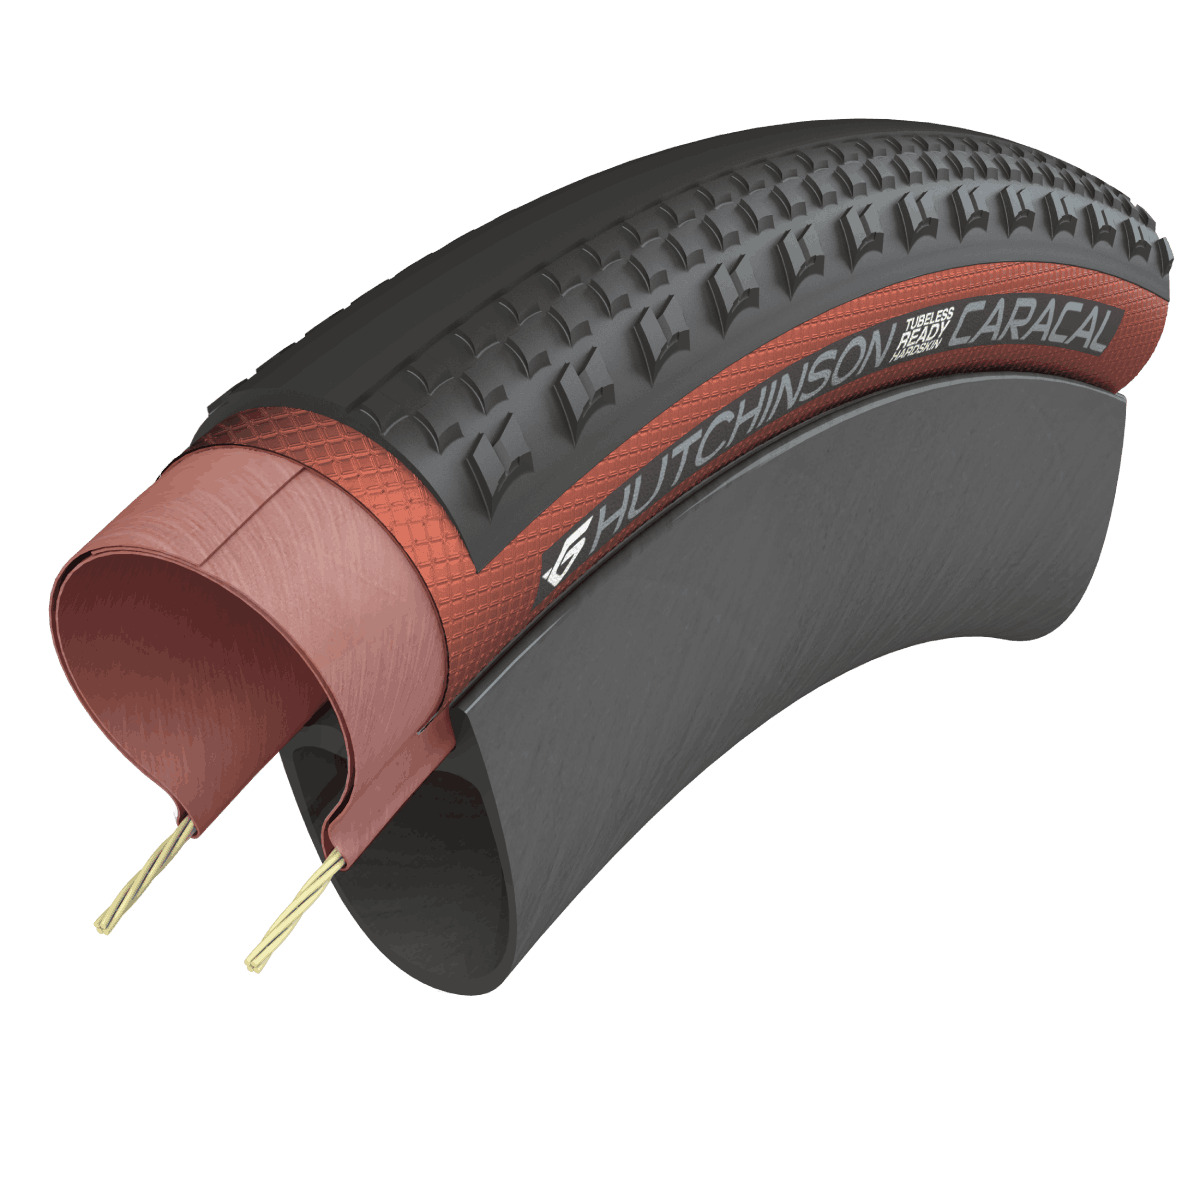 Caracal Race y Caracal, los dos nuevos neumáticos gravel de Hutchinson